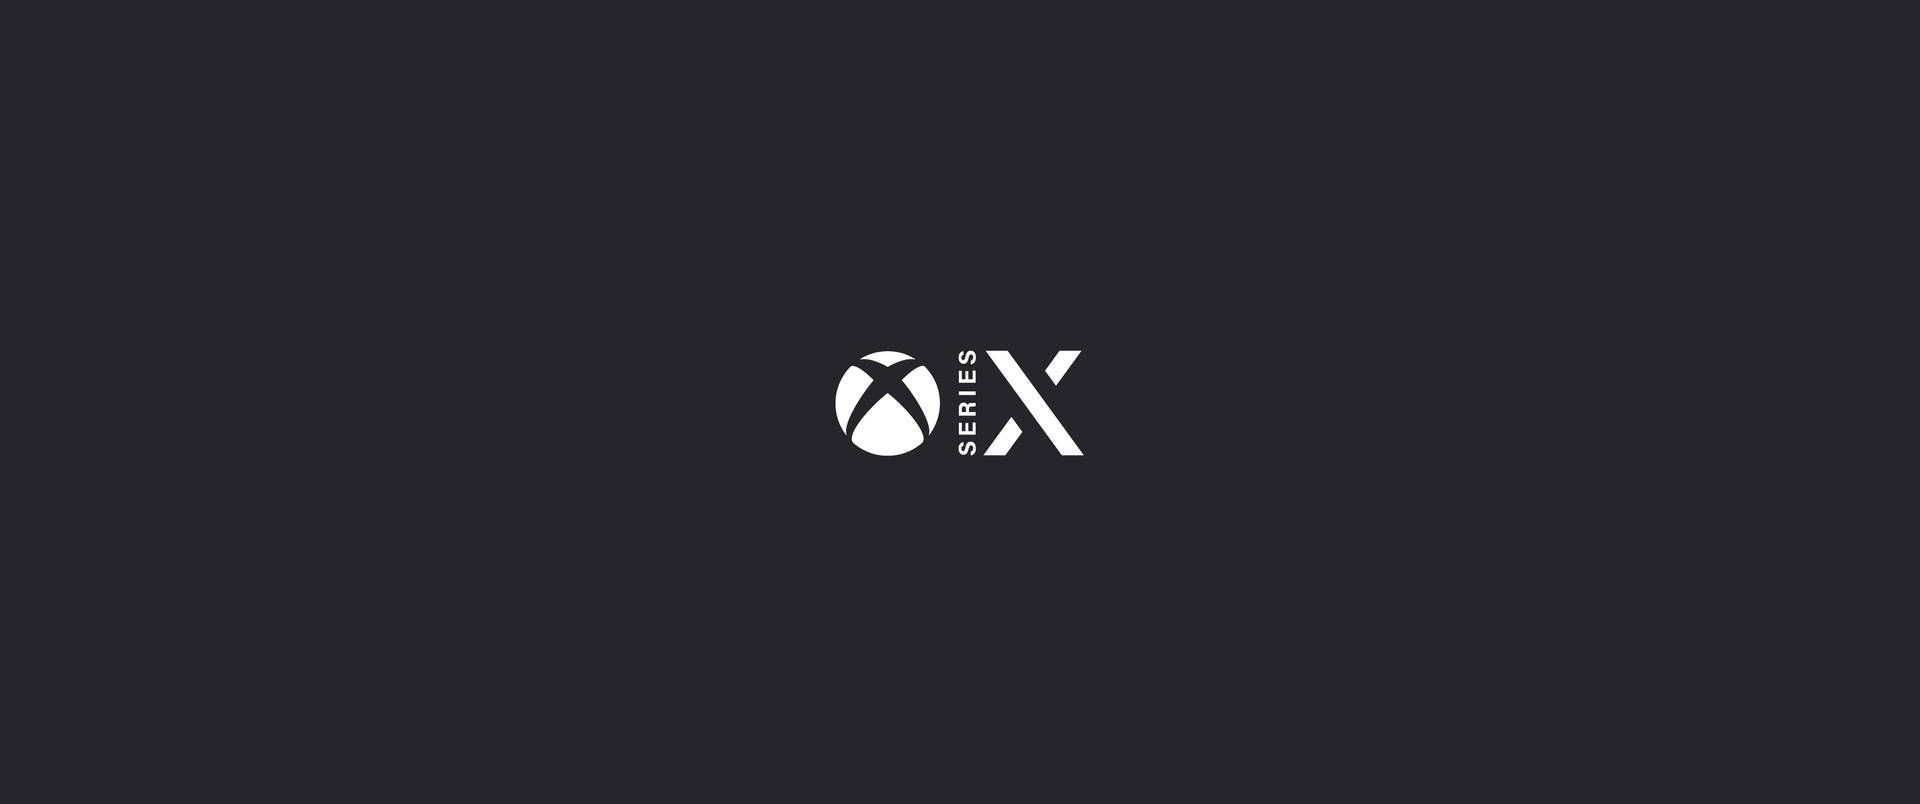 Xbox Series X Minimalist Dark Grey